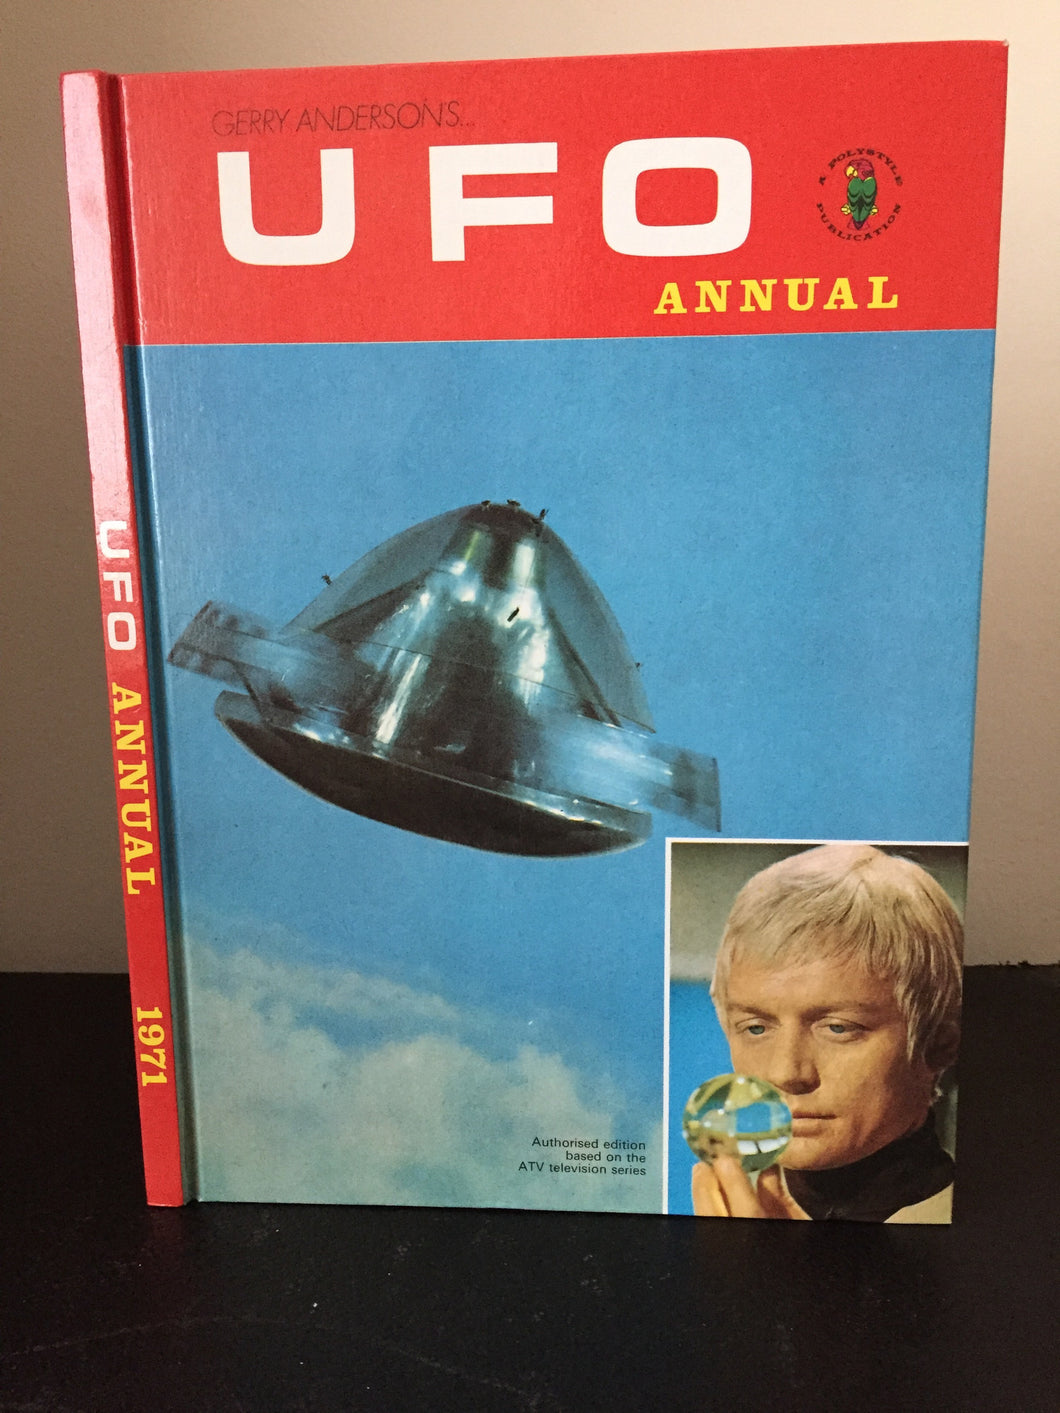 UFO Annual 1971